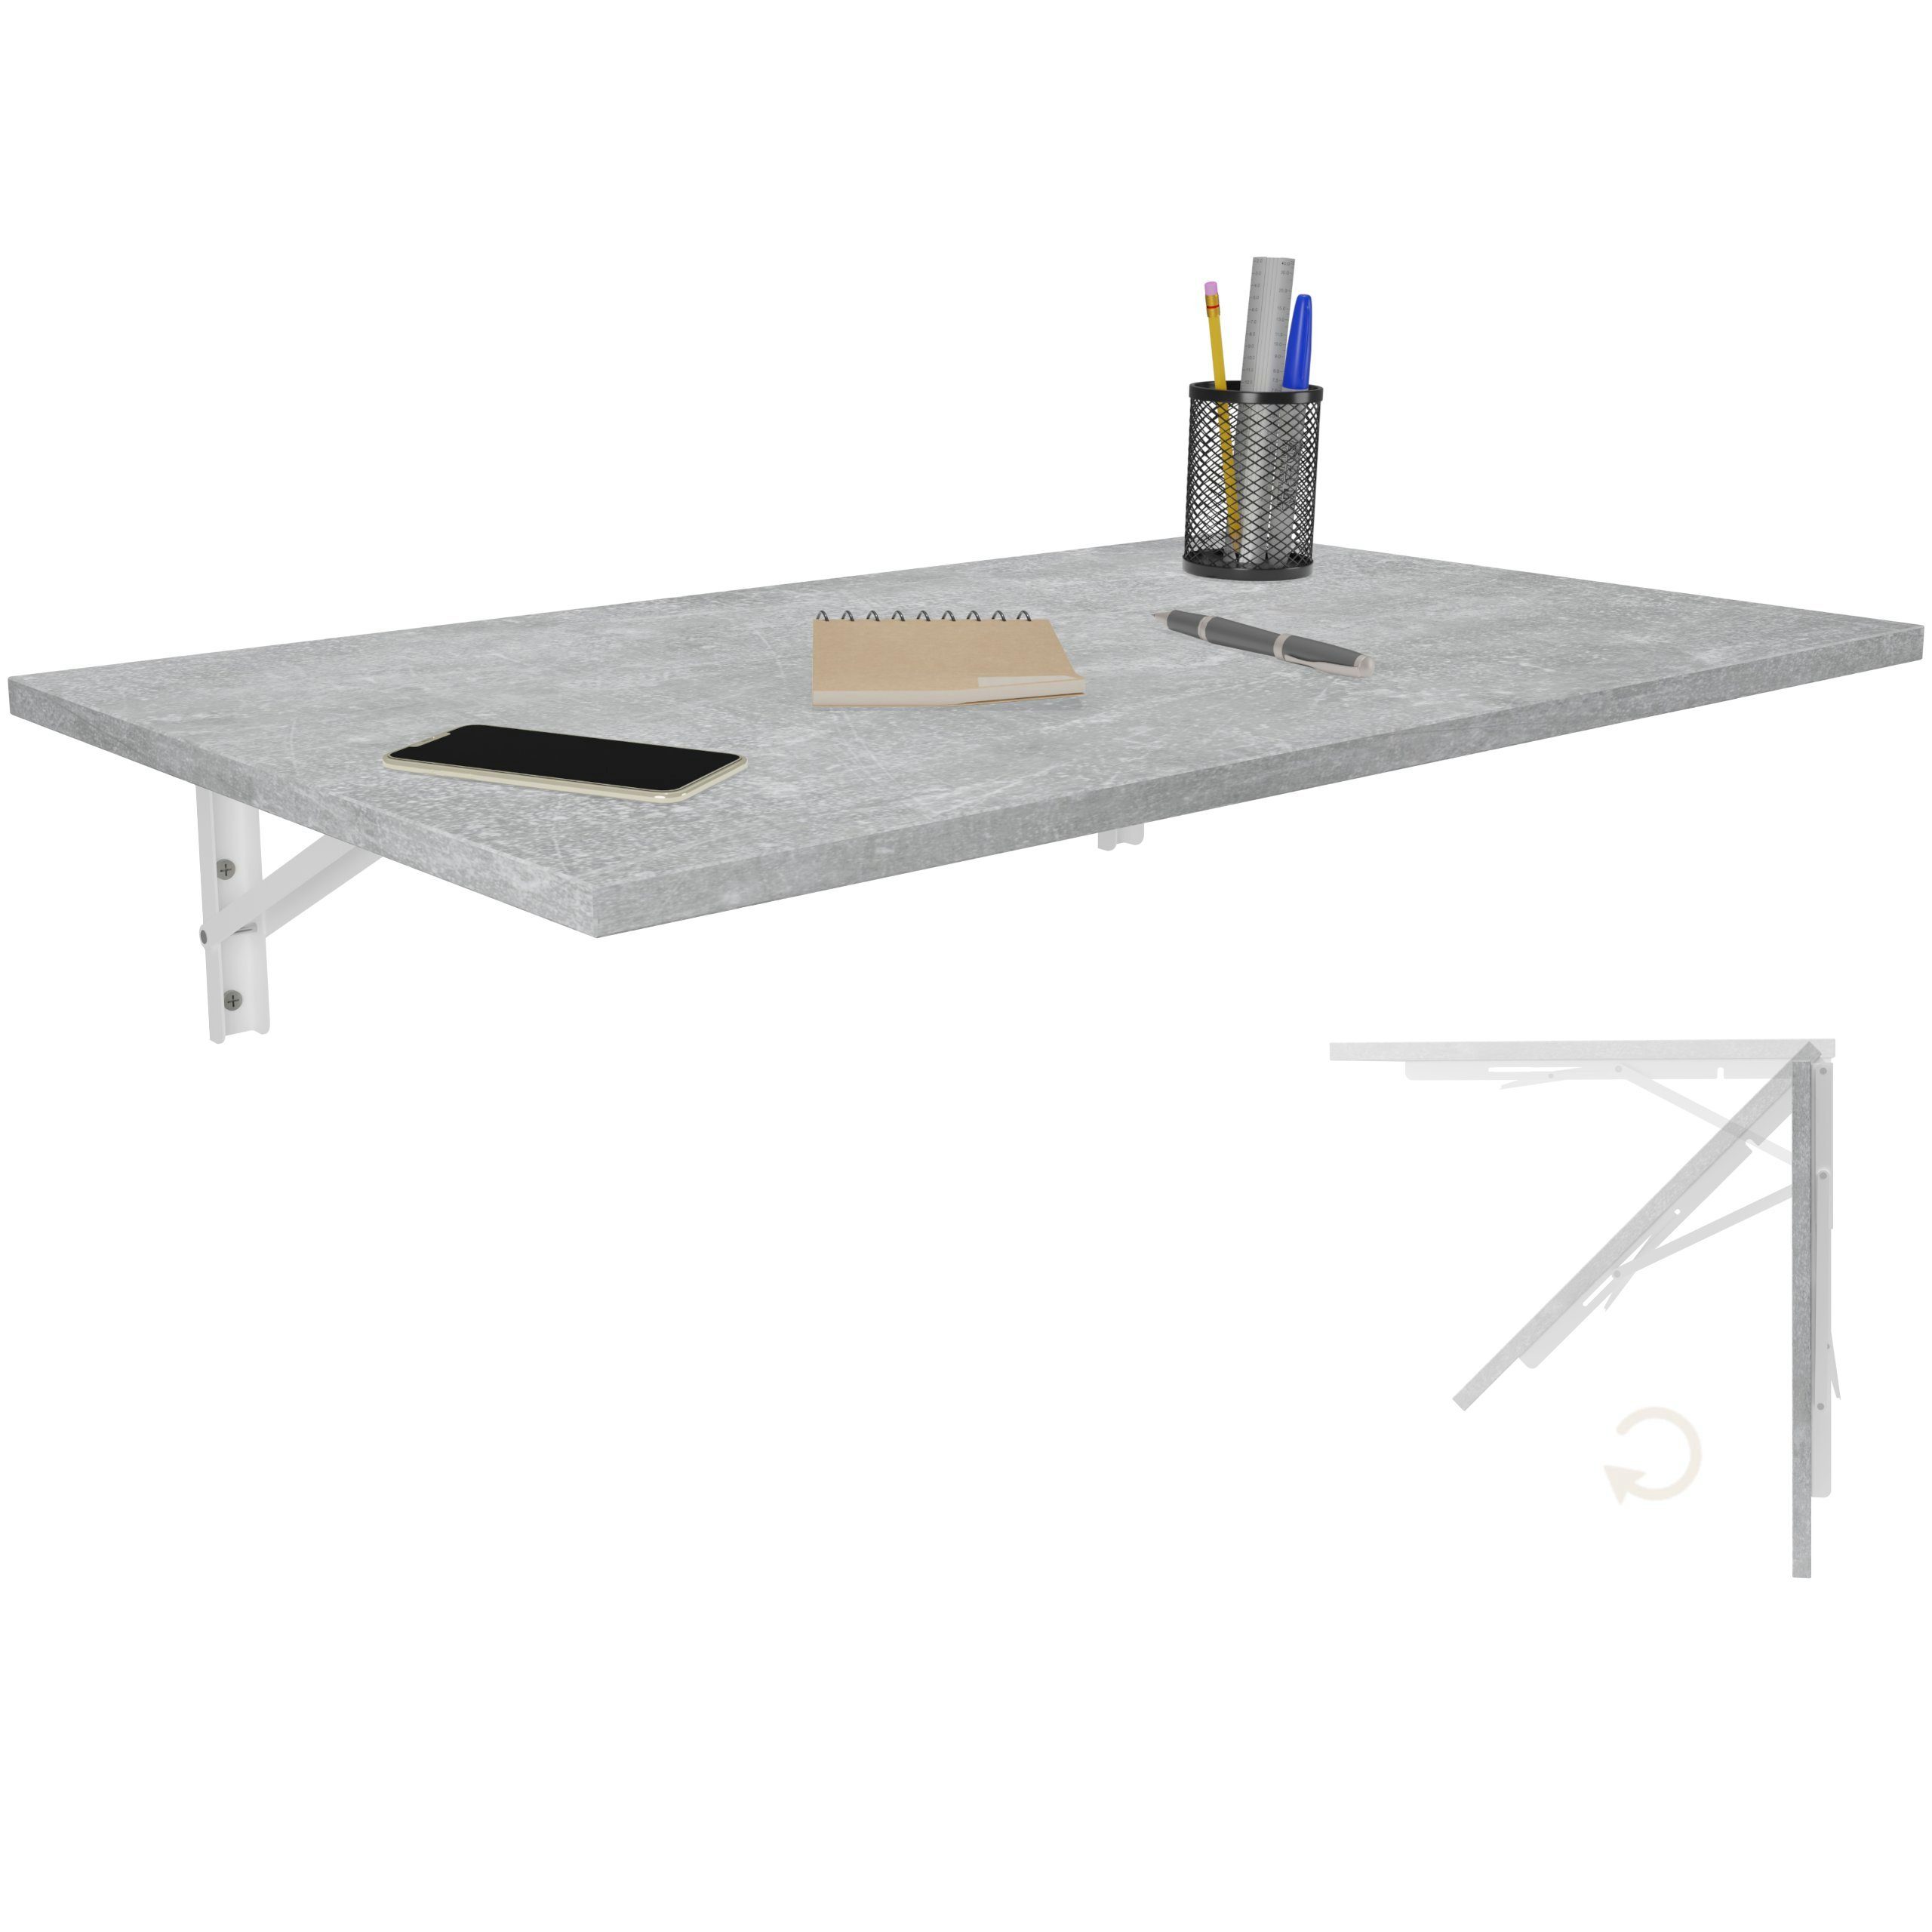 Klapptisch Wandklapptisch Wand KDR Beton 80x50 Tisch, Produktgestaltung Küchentisch Esstisch Schreibtisch